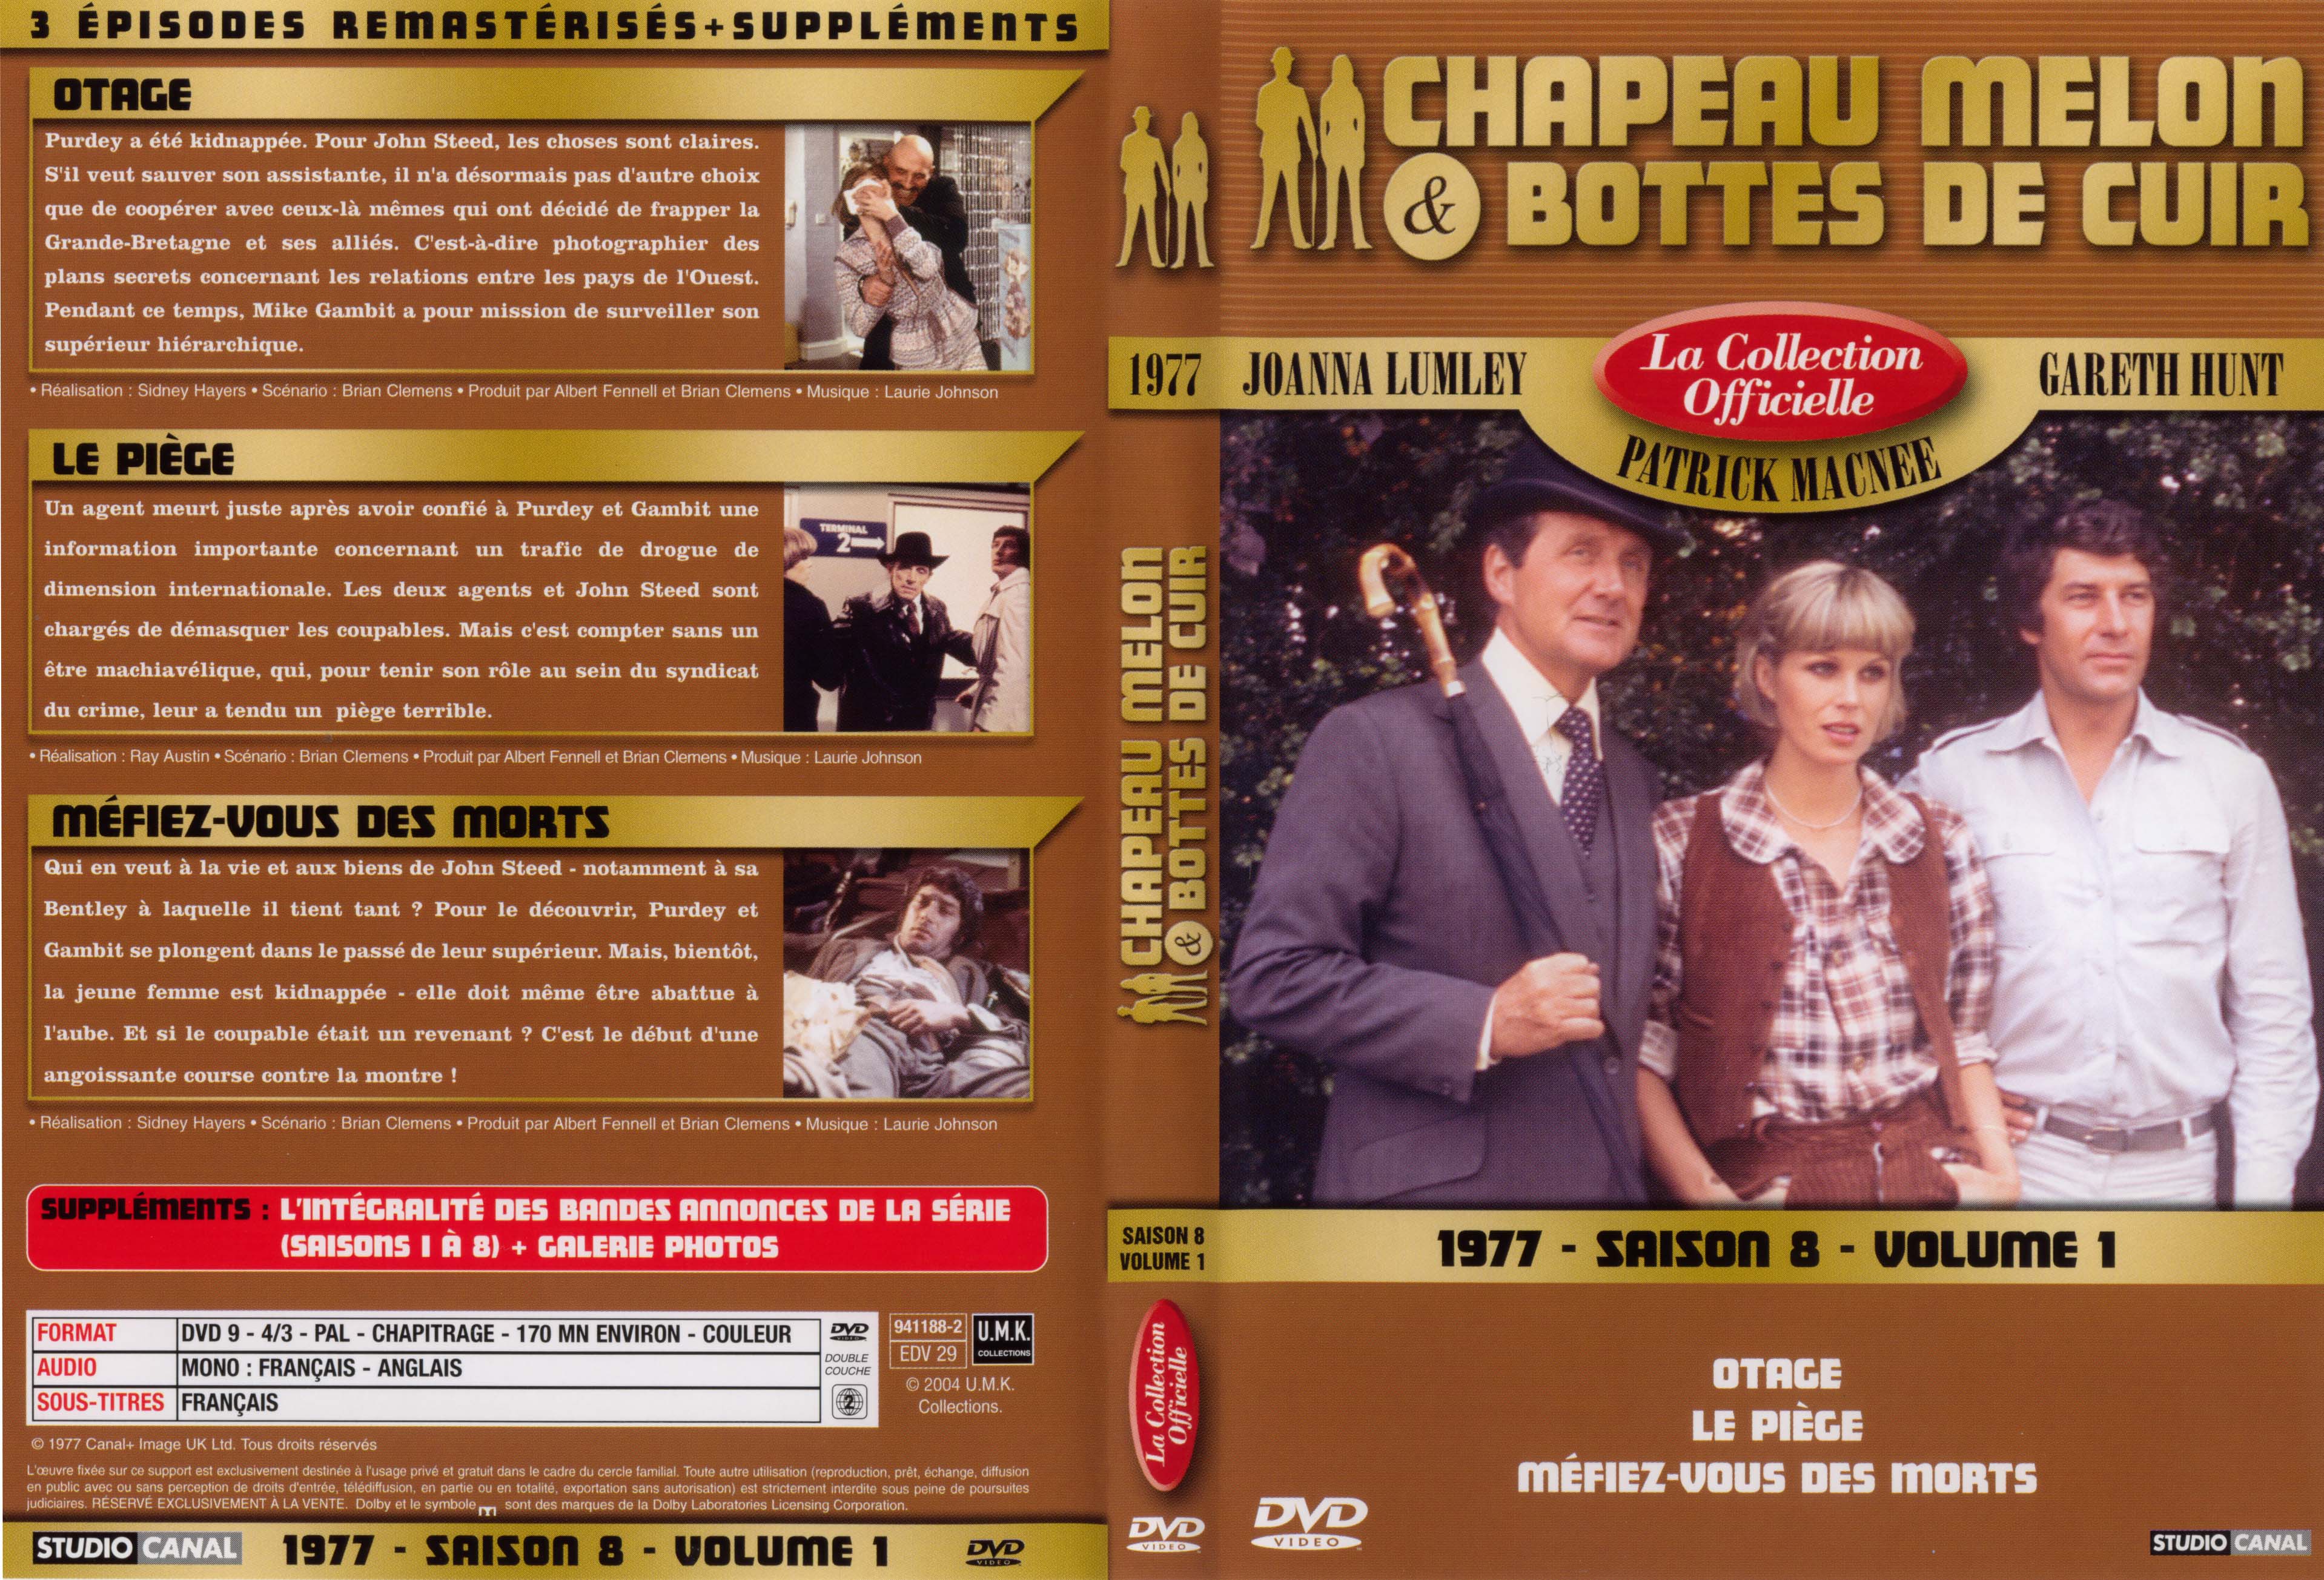 Jaquette DVD Chapeau melon et bottes de cuir 1977 saison 8 vol 1